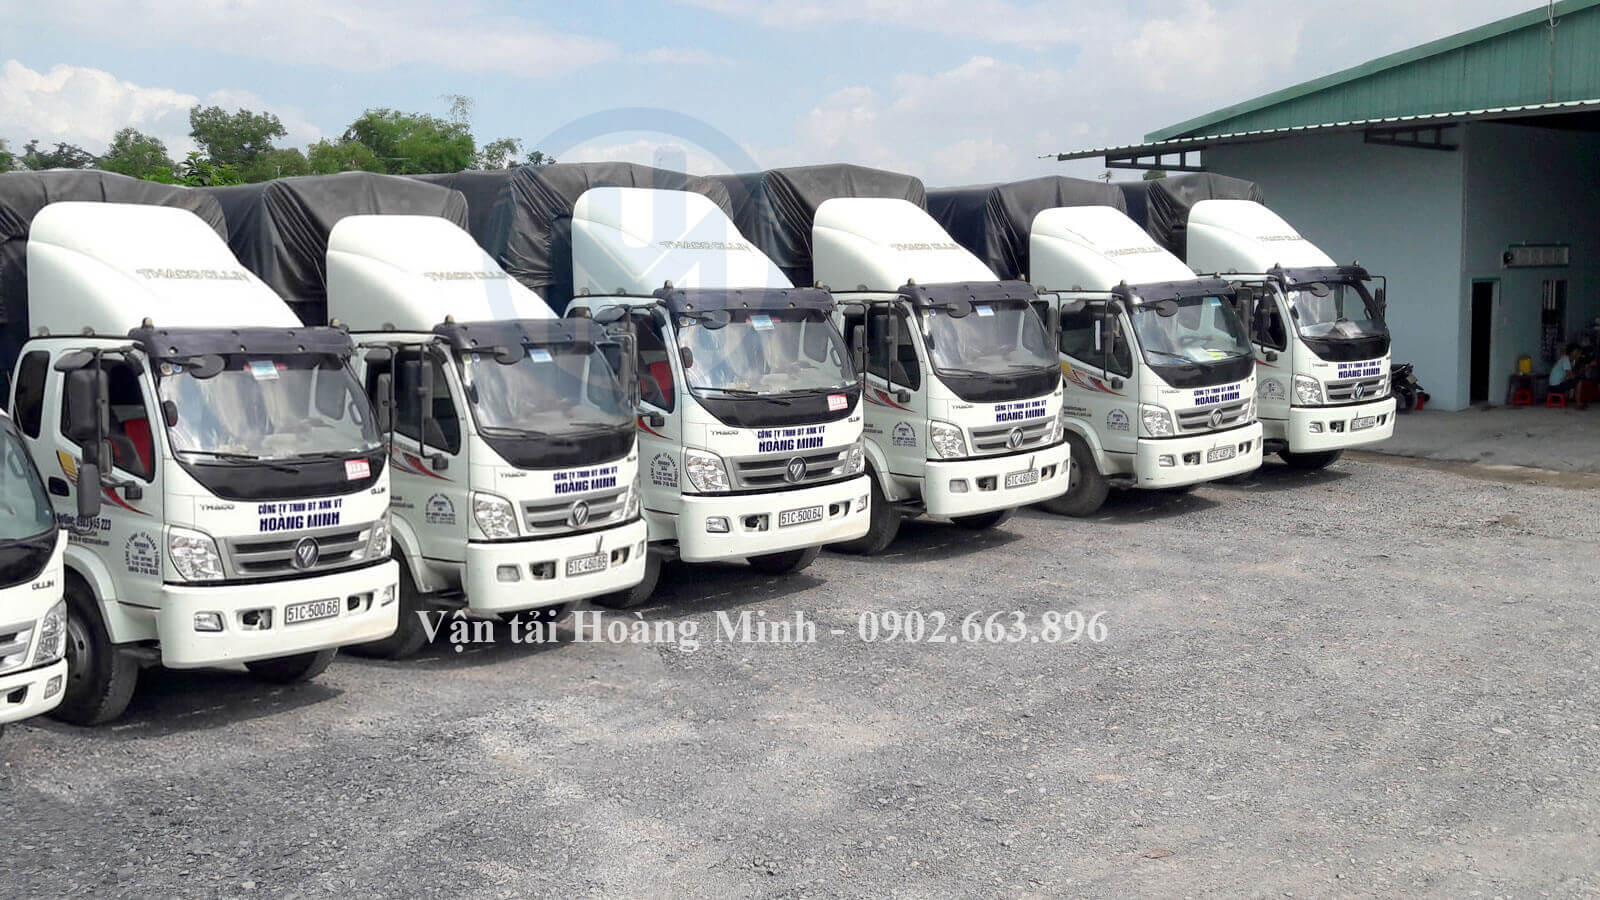 Năng lực cho thuê xe tải chở hàng tỉnh Lâm Đồng 24 giờ